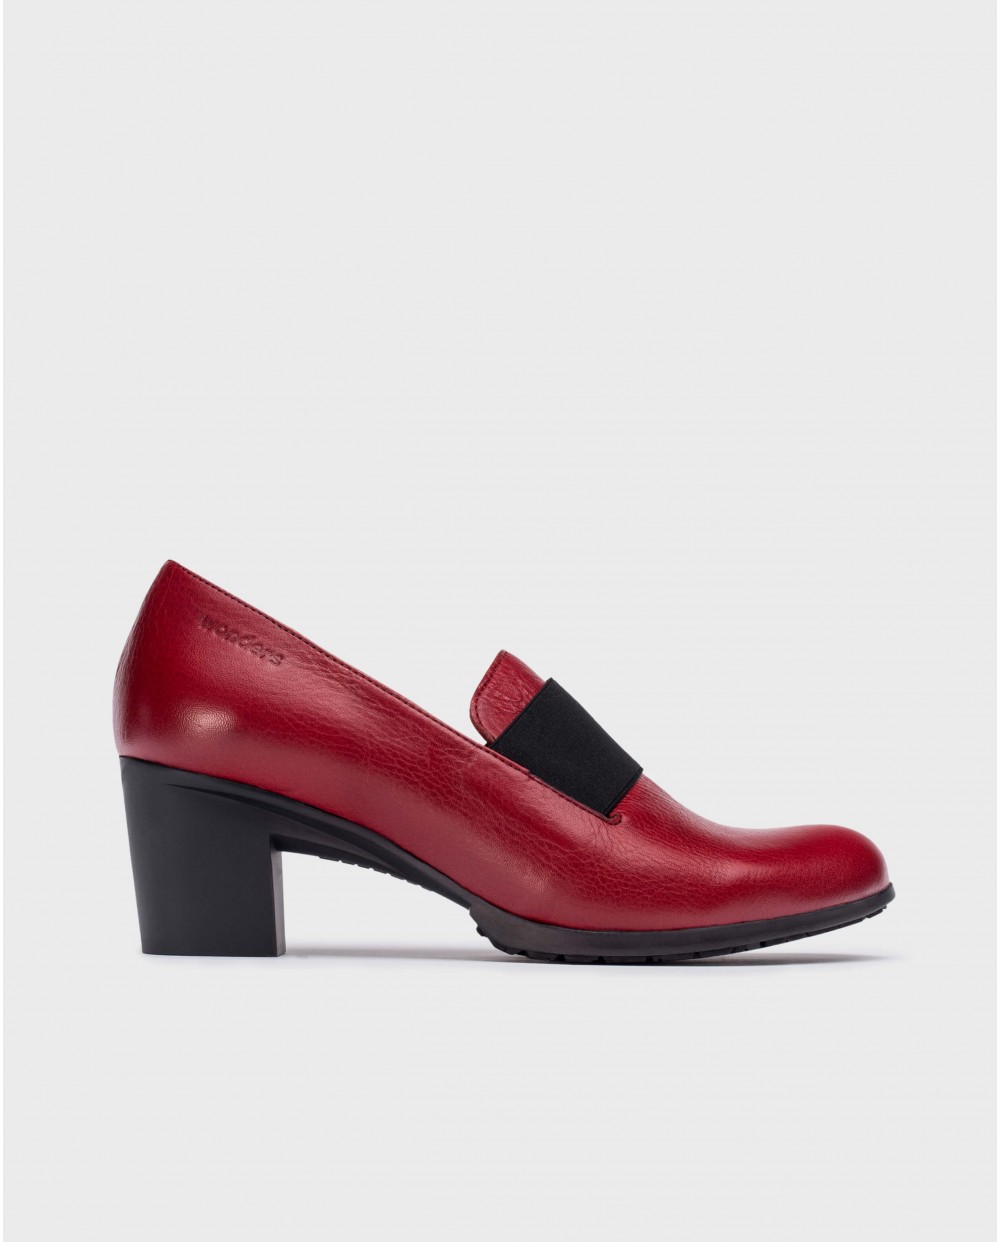 Wonders-Heels-Red elastic shoes